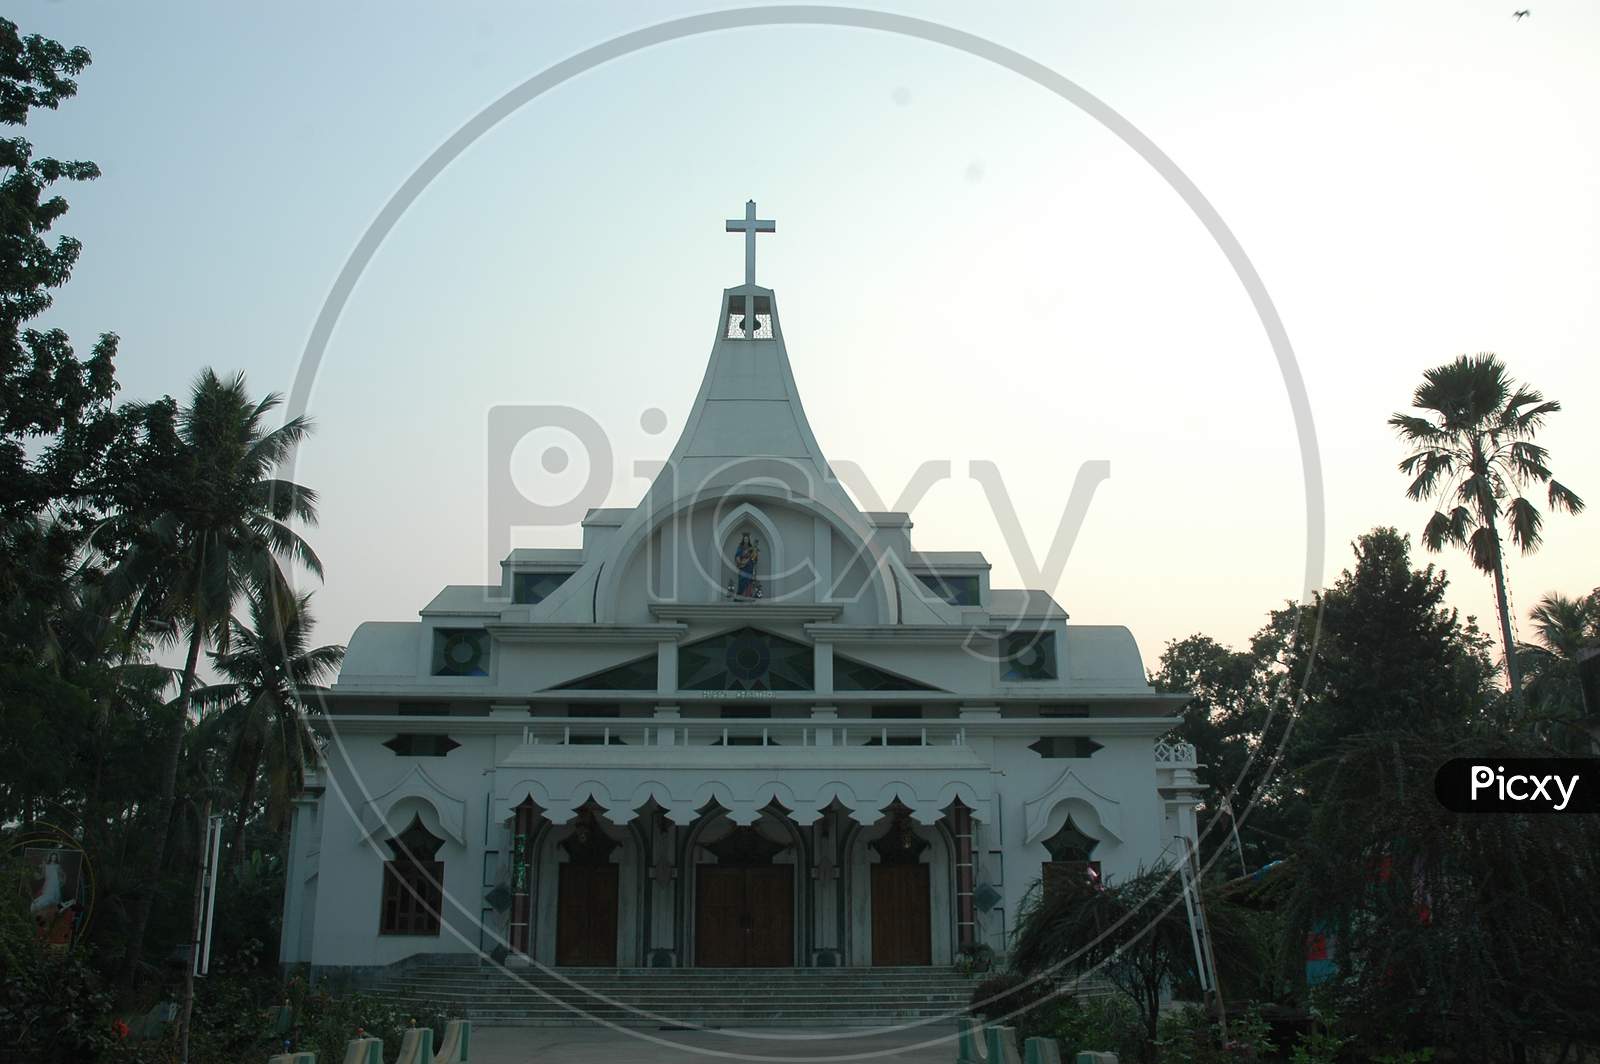 A Church in the Murshidabad